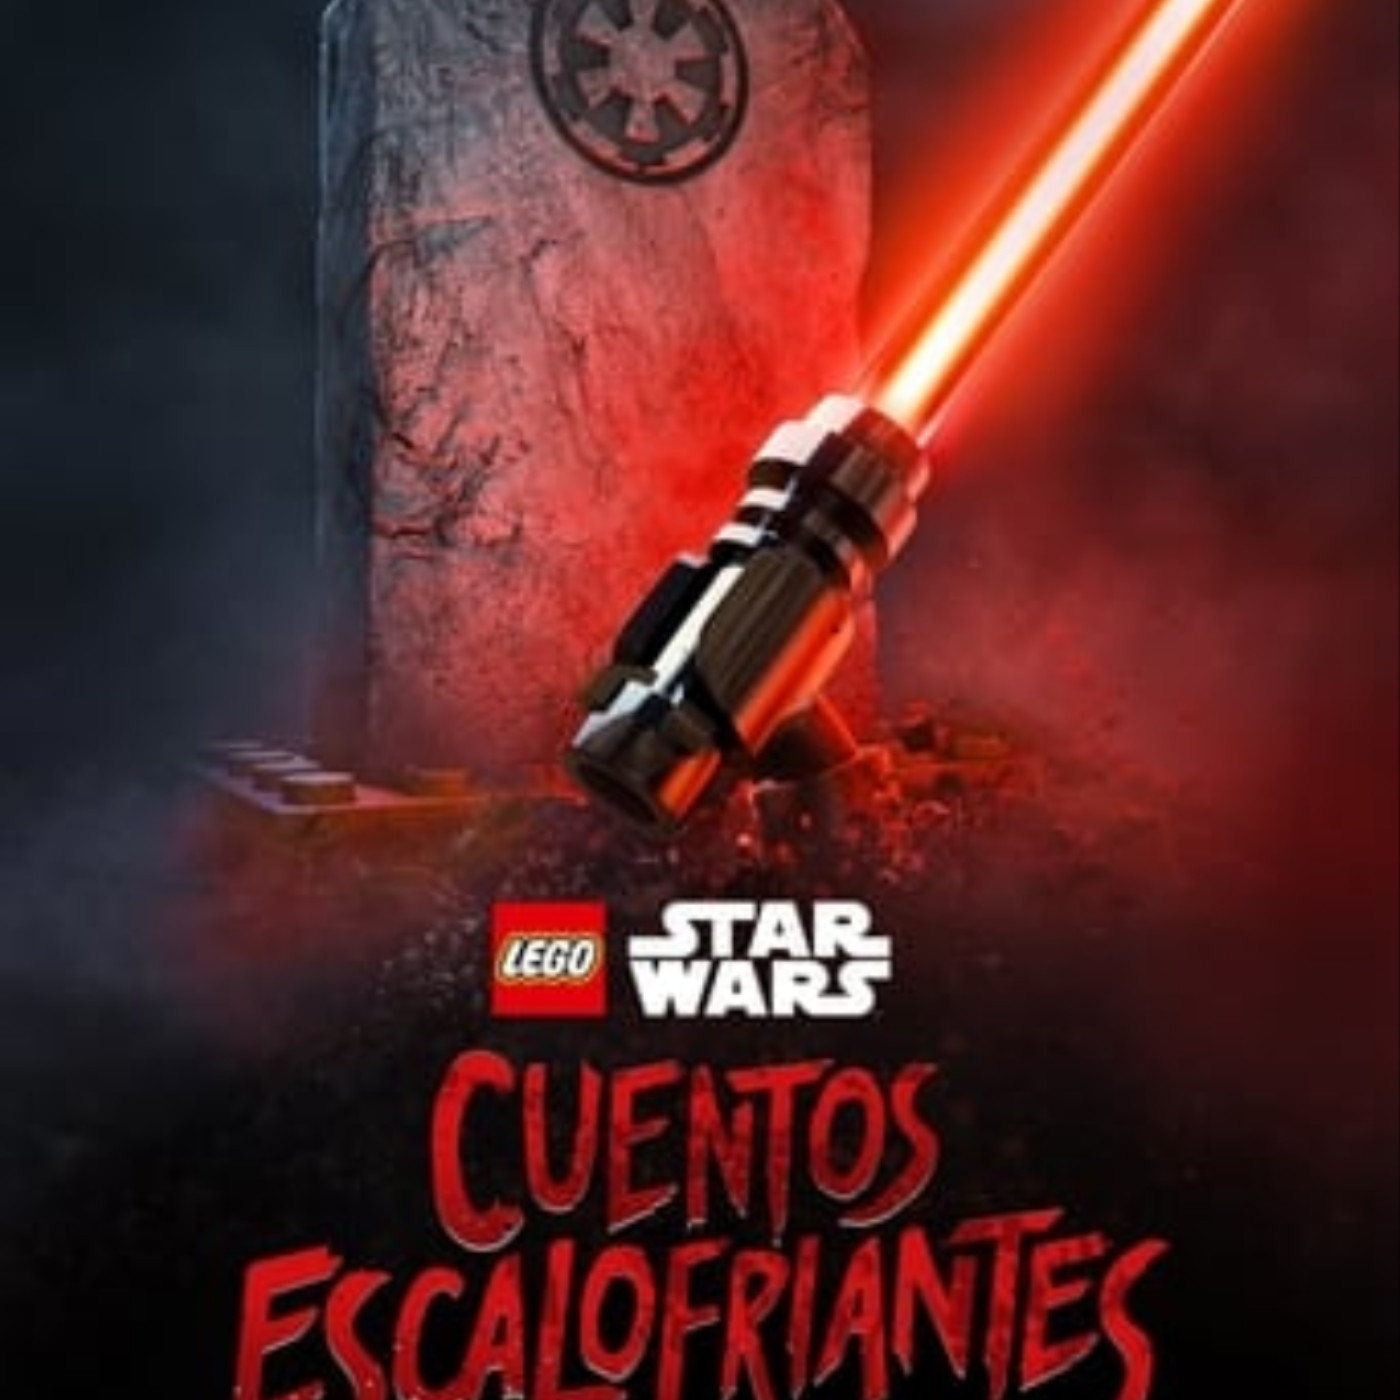 HDTV] LEGO Star Wars Cuentos escalofriantes pelicula completa en español gratis  Gnula | Podcast on SoundOn